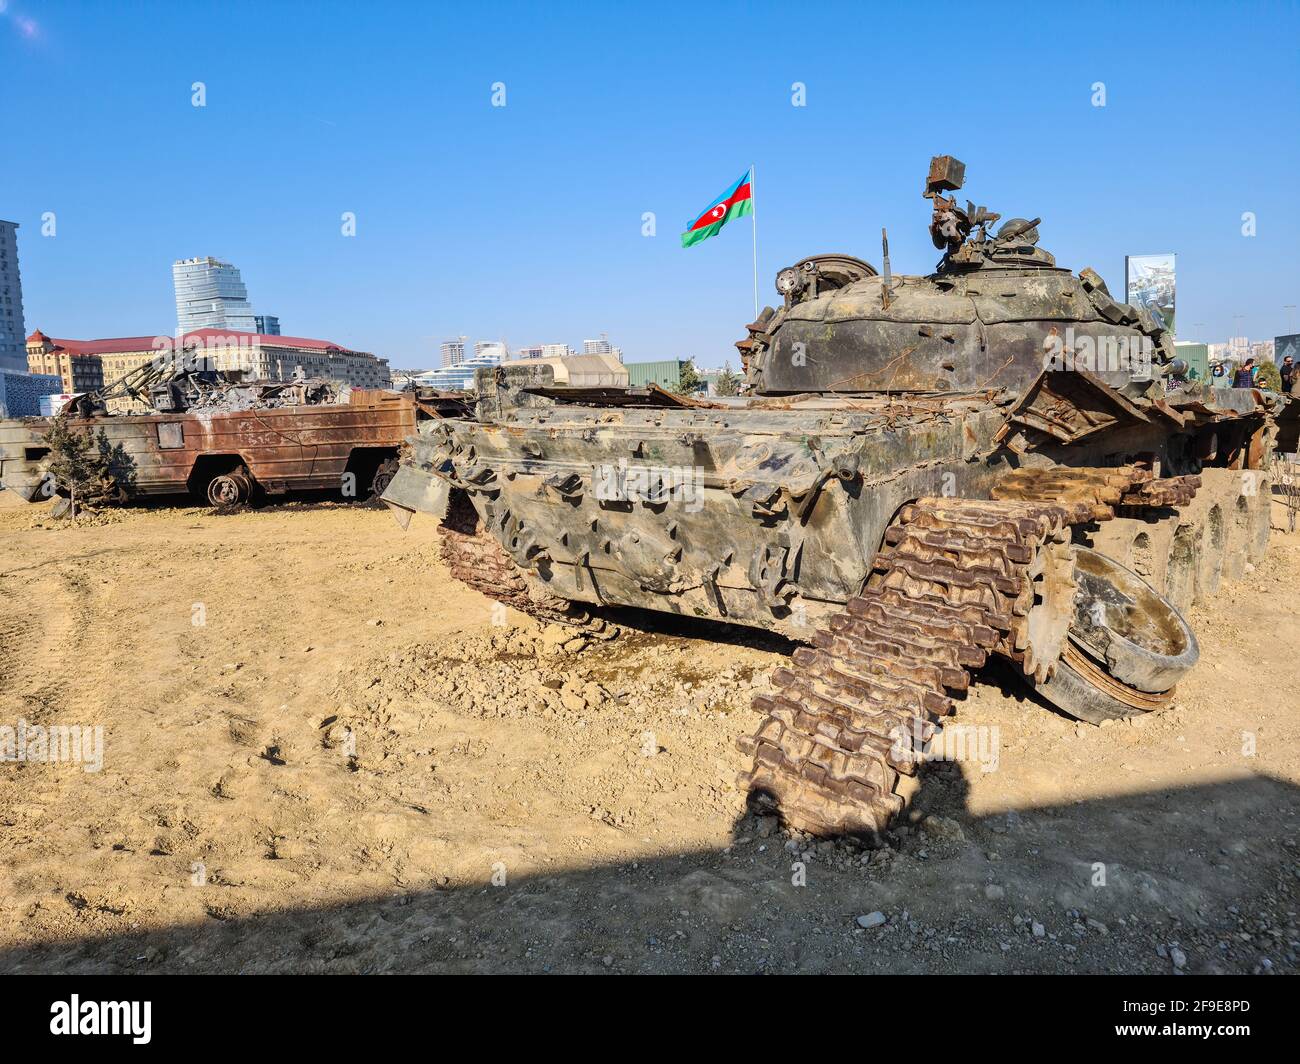 T-72 sowjetischer russischer Hauptkampfpanzer, zerstört - Baku, Aserbaidschan, 04-16-2021 Stockfoto